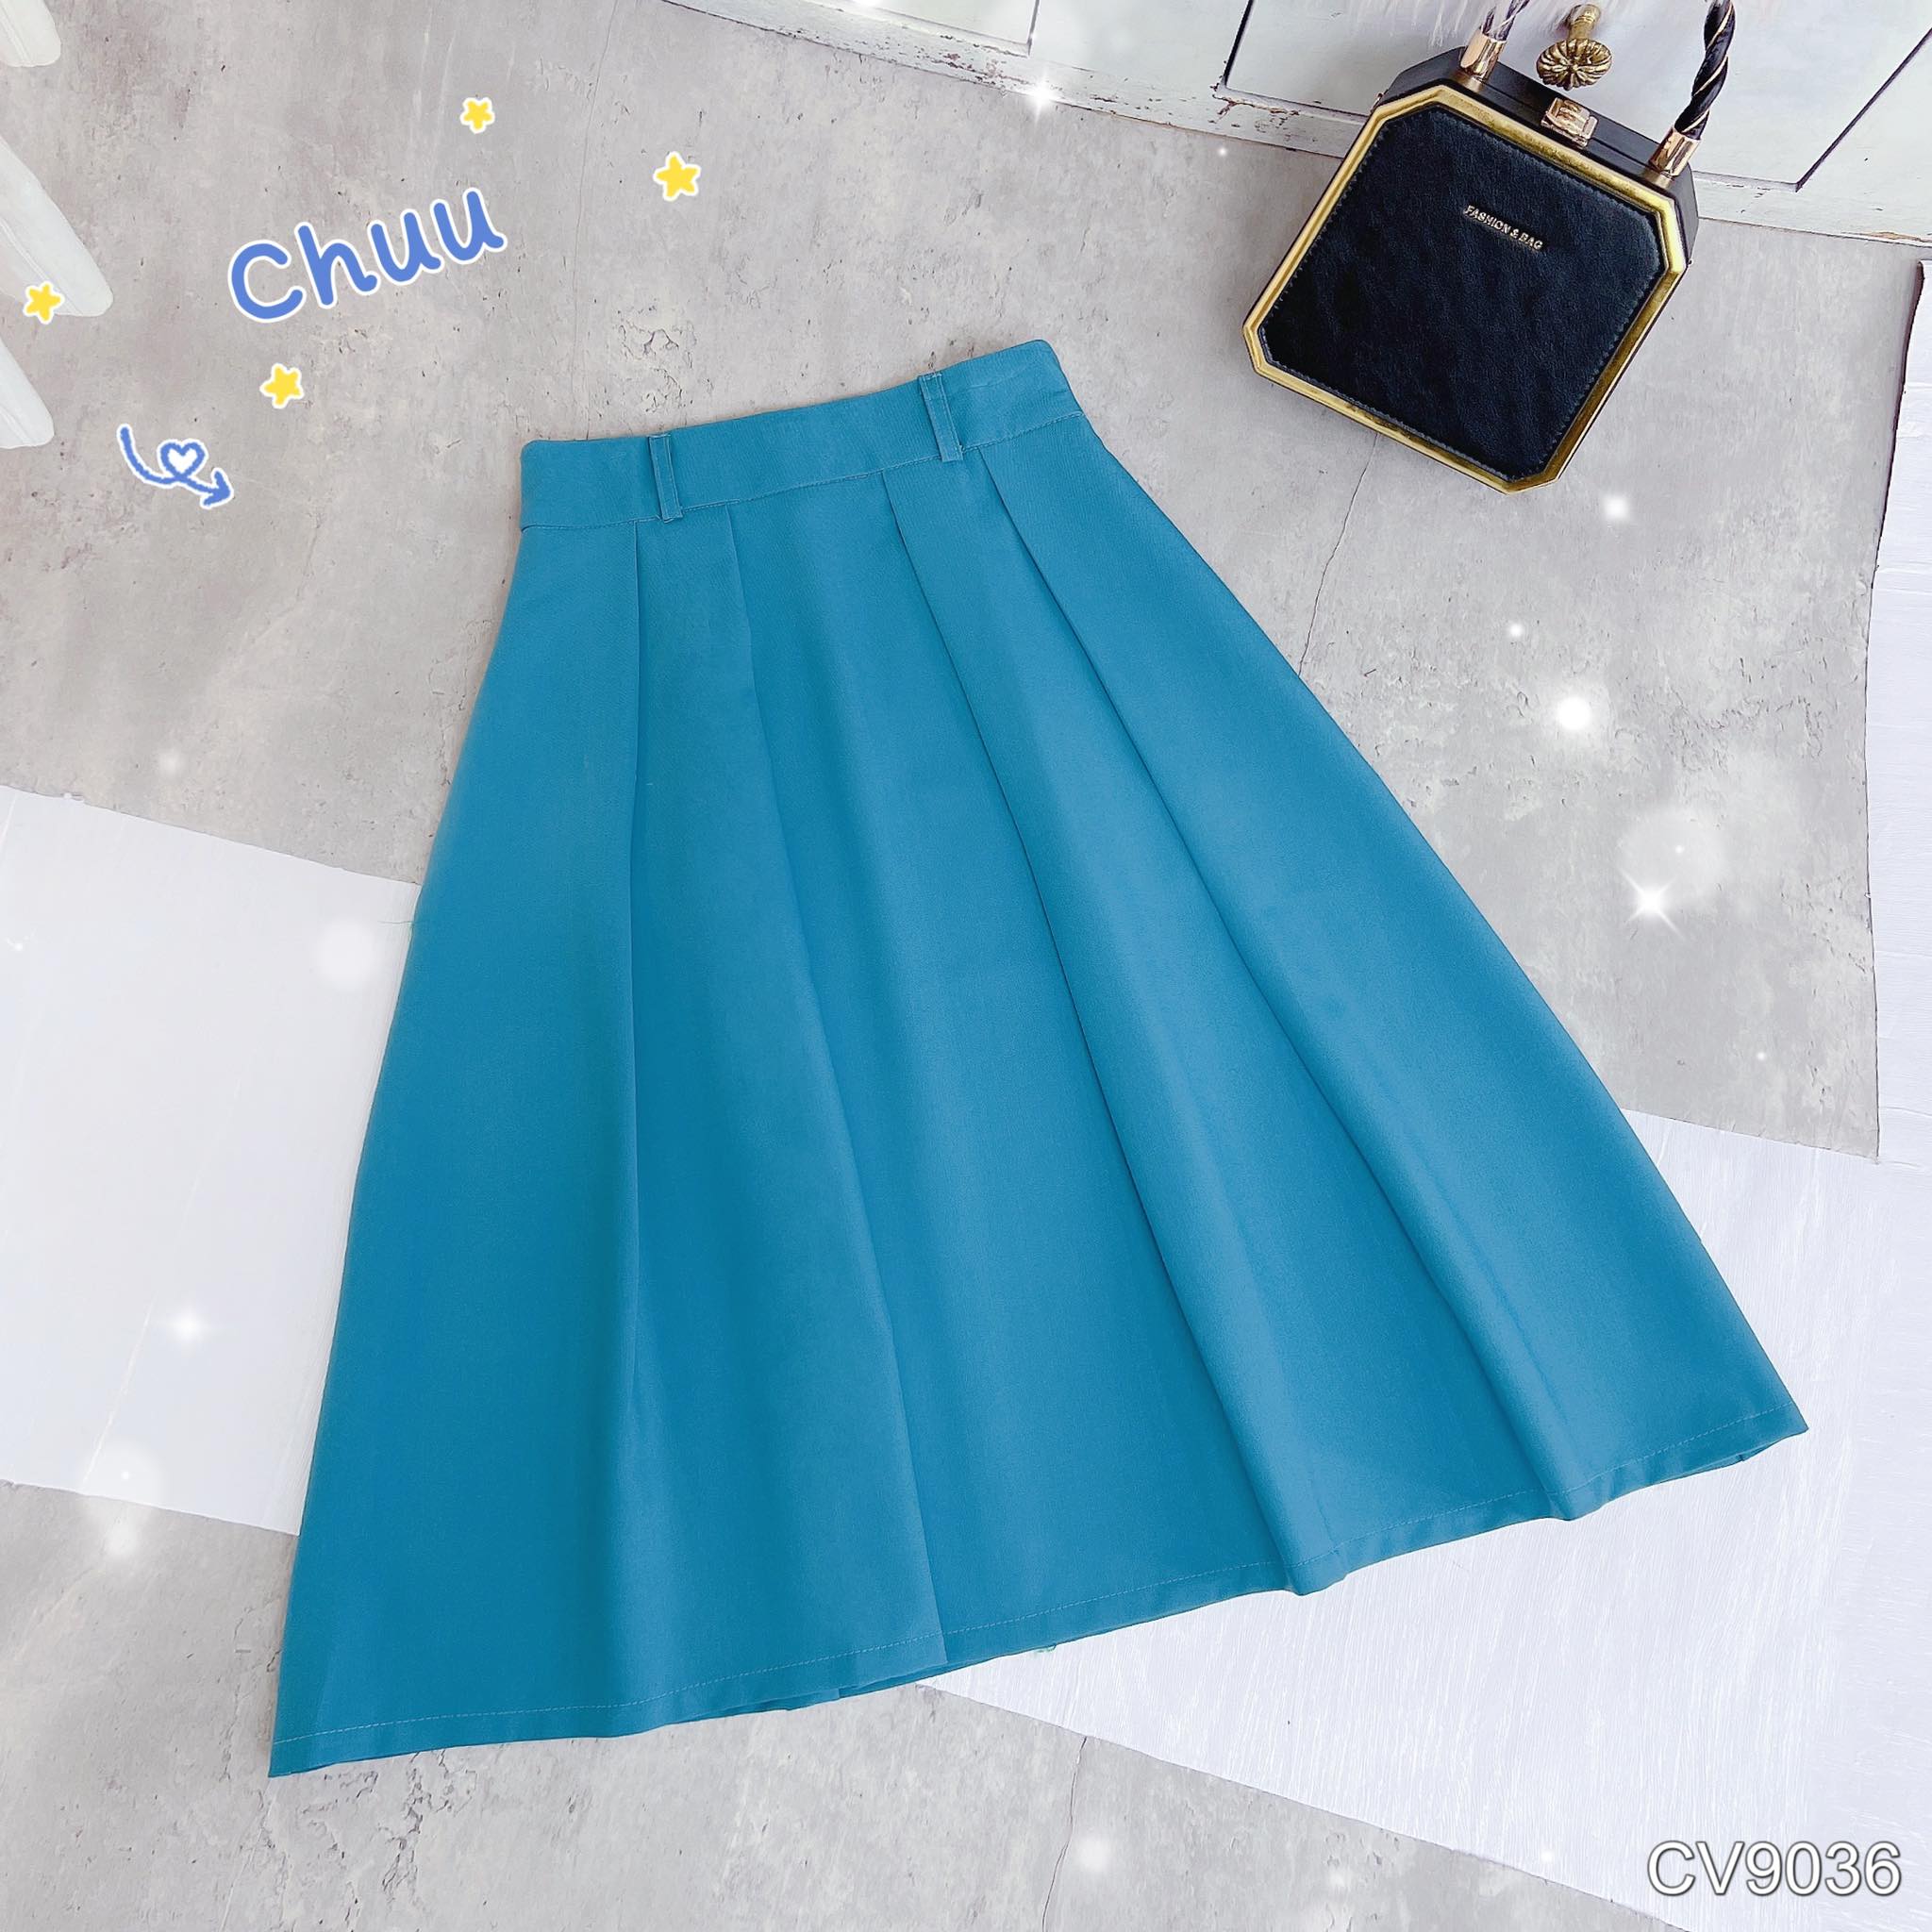 Chân váy chữ A - Màu xanh tím than - Ladies | H&M VN